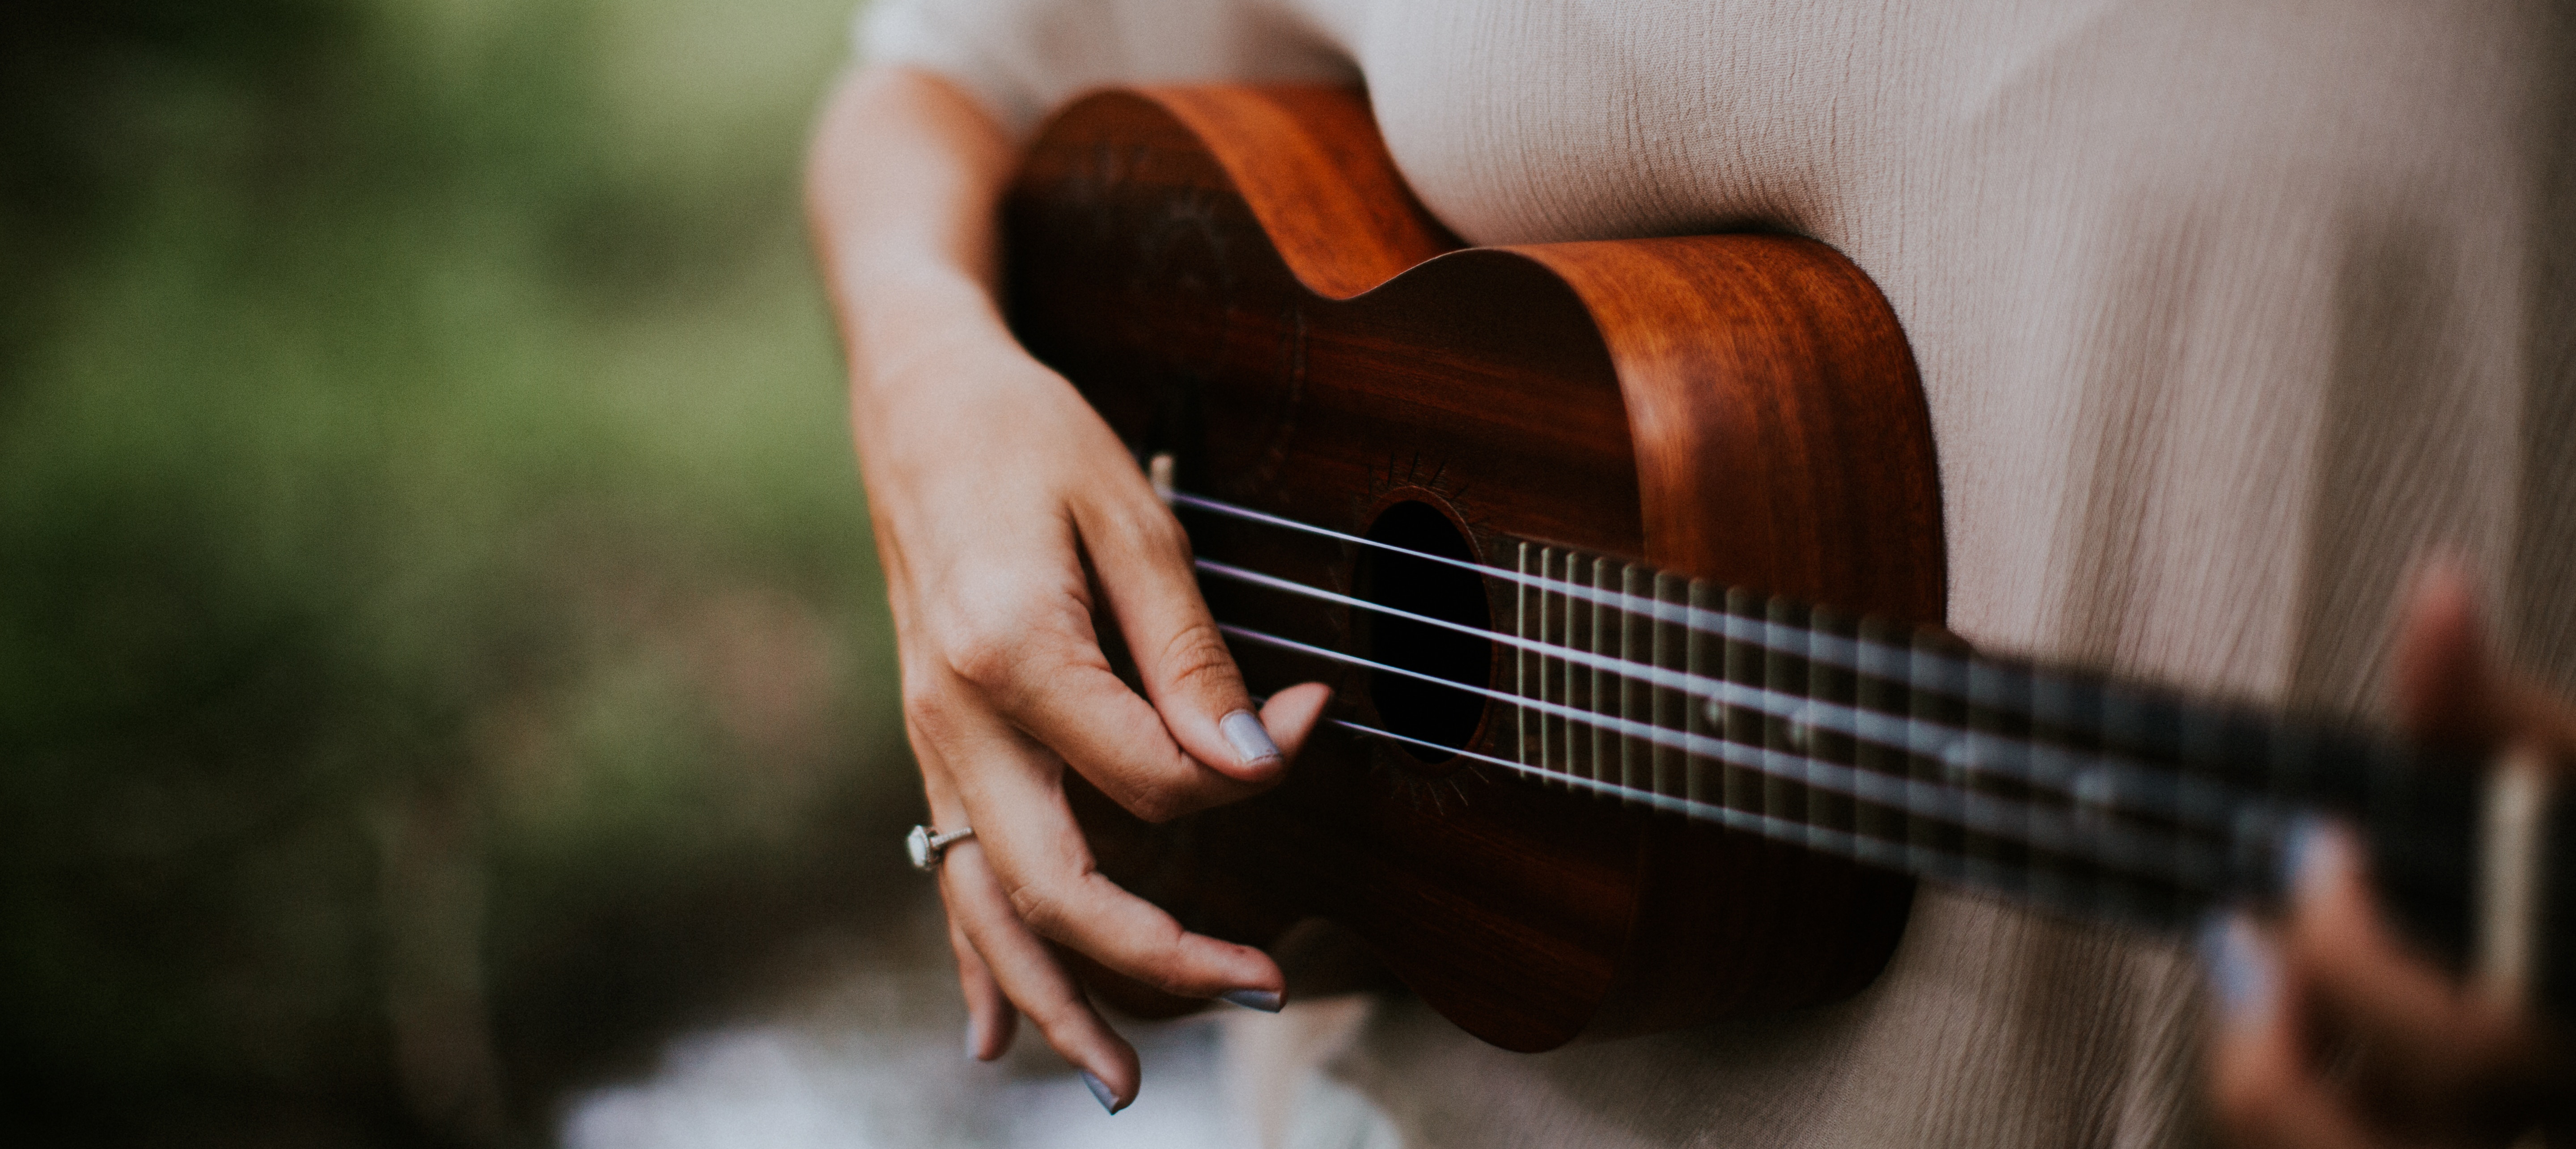 Woman playing the ukulele